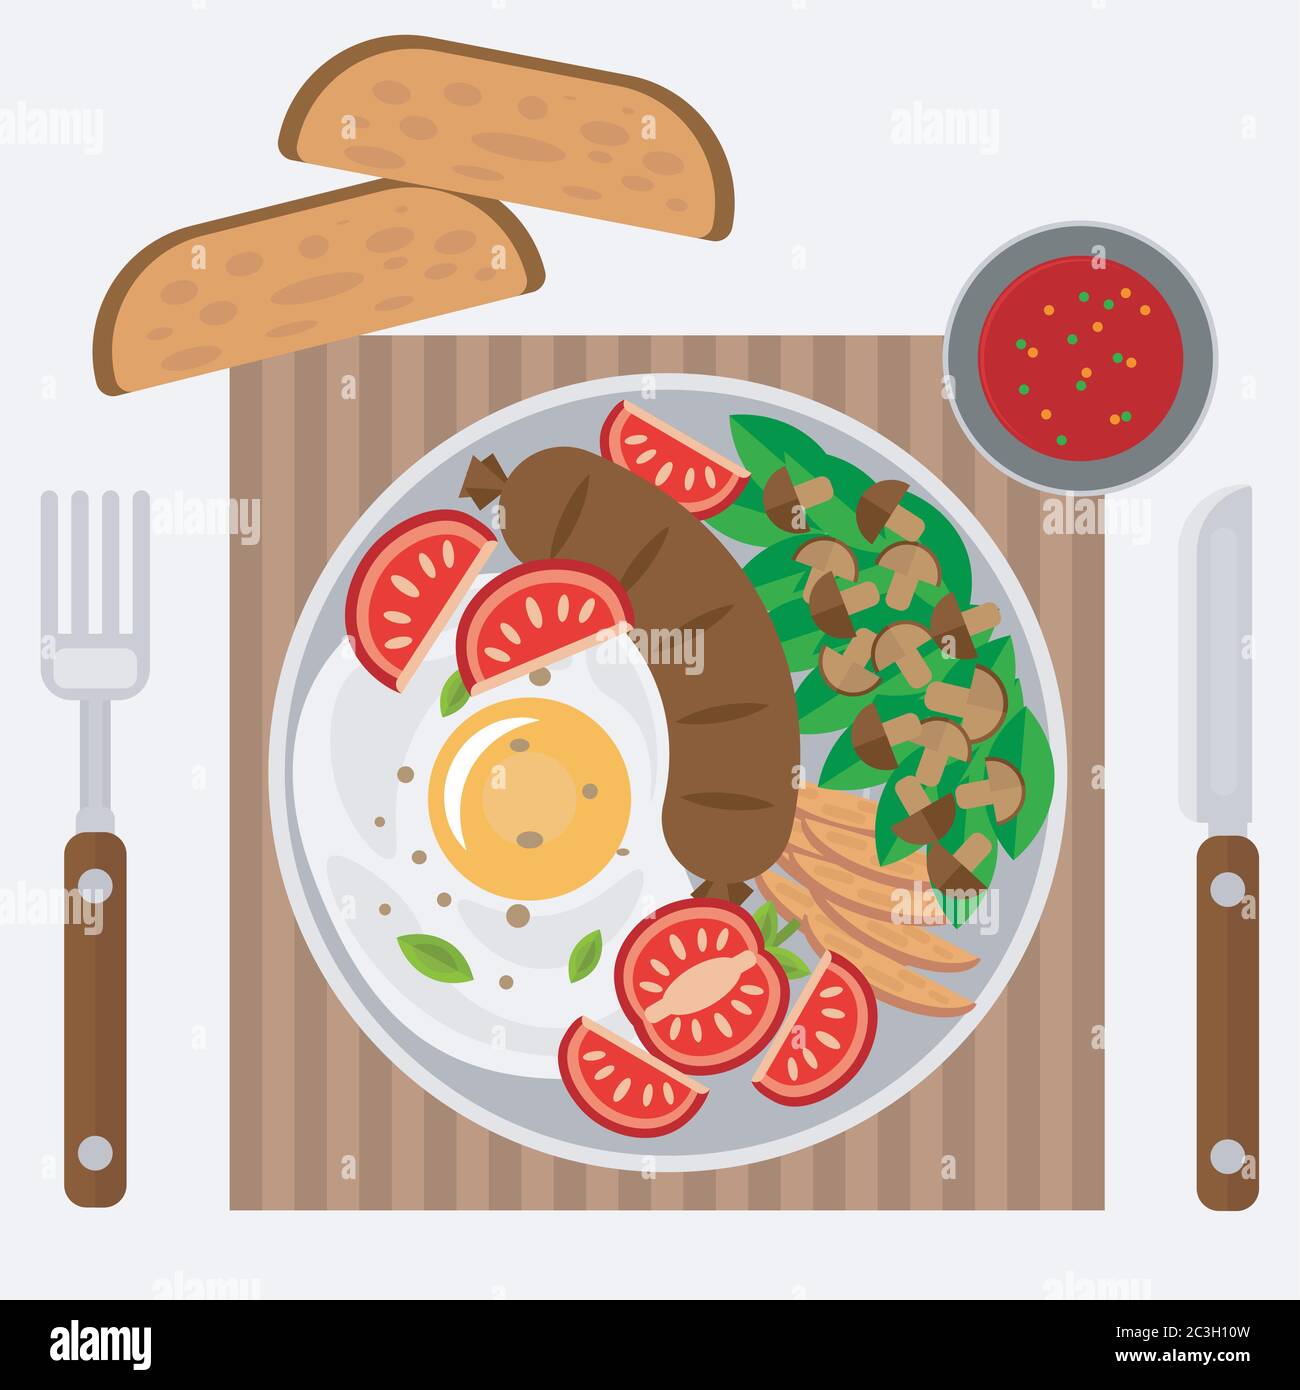 Rührei mit Wurst, Gemüse und Pilzen. Vektor-Illustration zum Thema Lebensmittel, Draufsicht. Stock Vektor